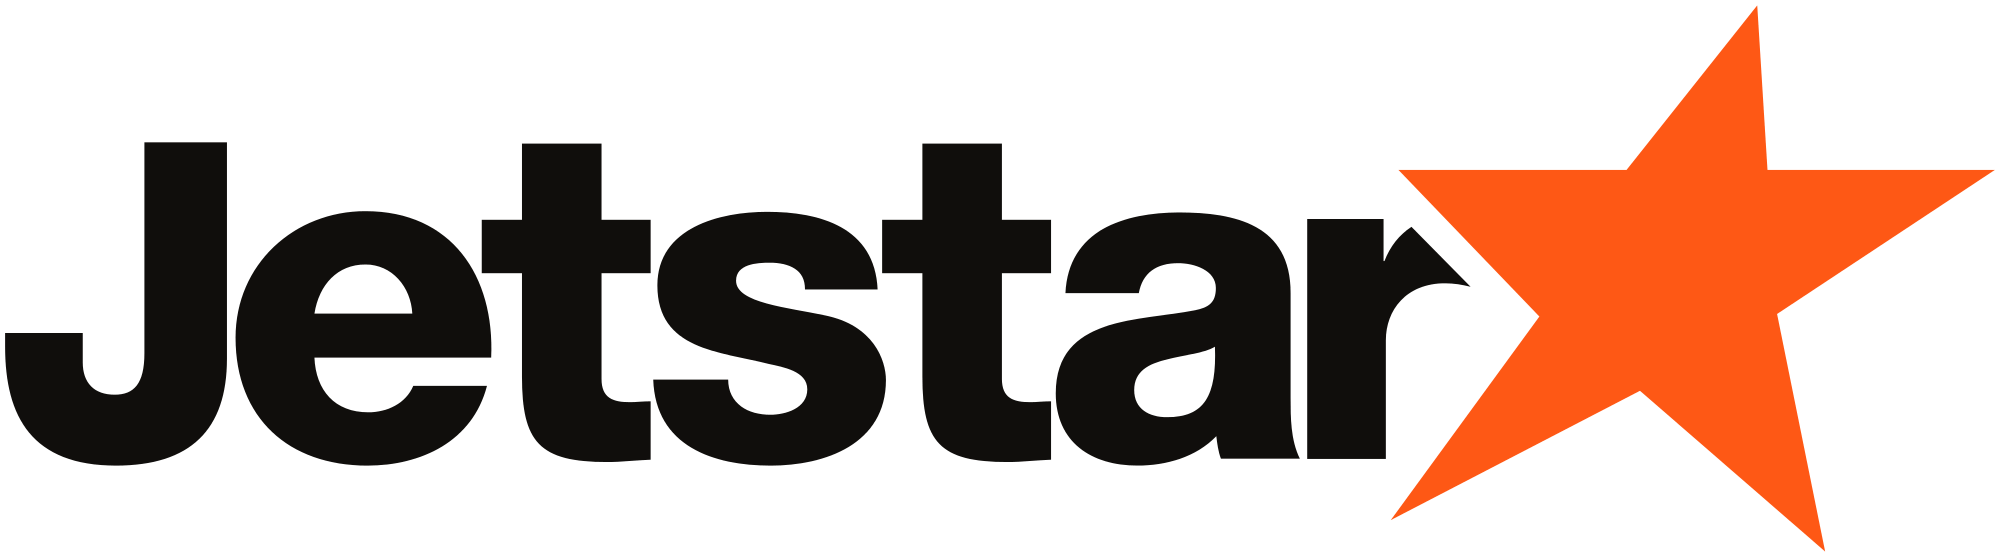 Biểu tượng quen thuộc của Jetstar Pacific